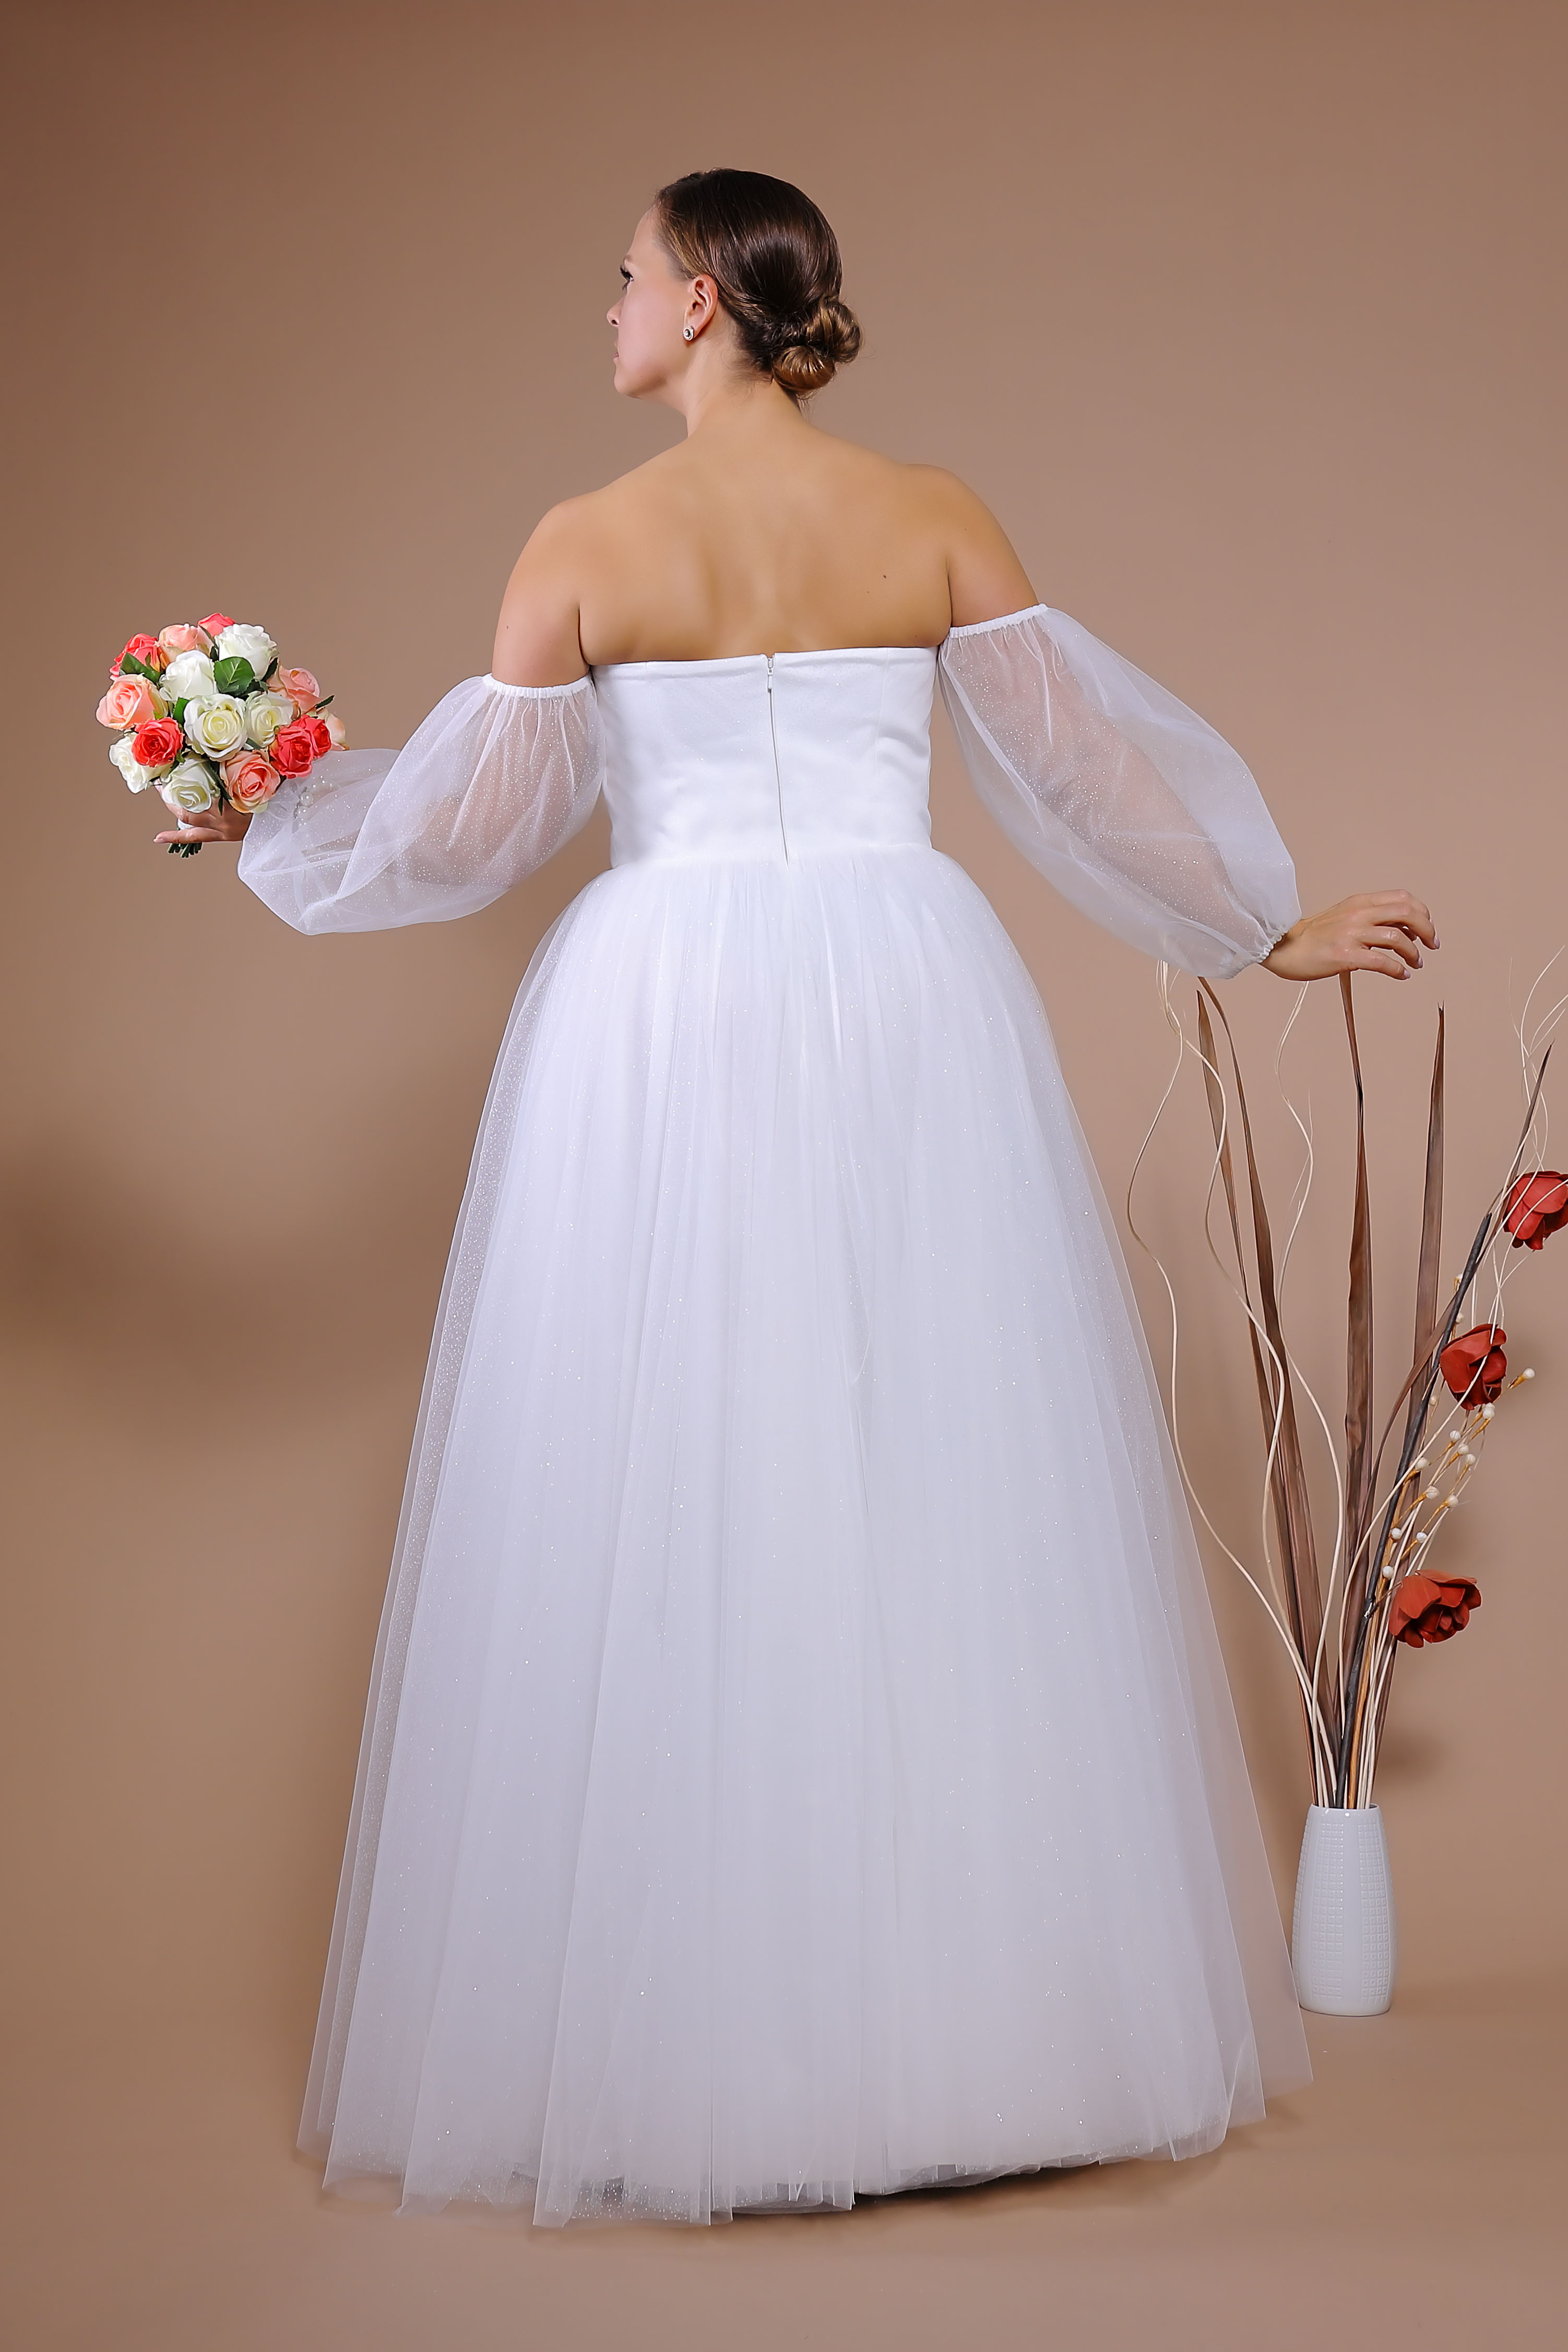 Schantal Brautkleid aus der Kollektion „Queen XXL“, Modell VA 1751 XXL. Foto 6